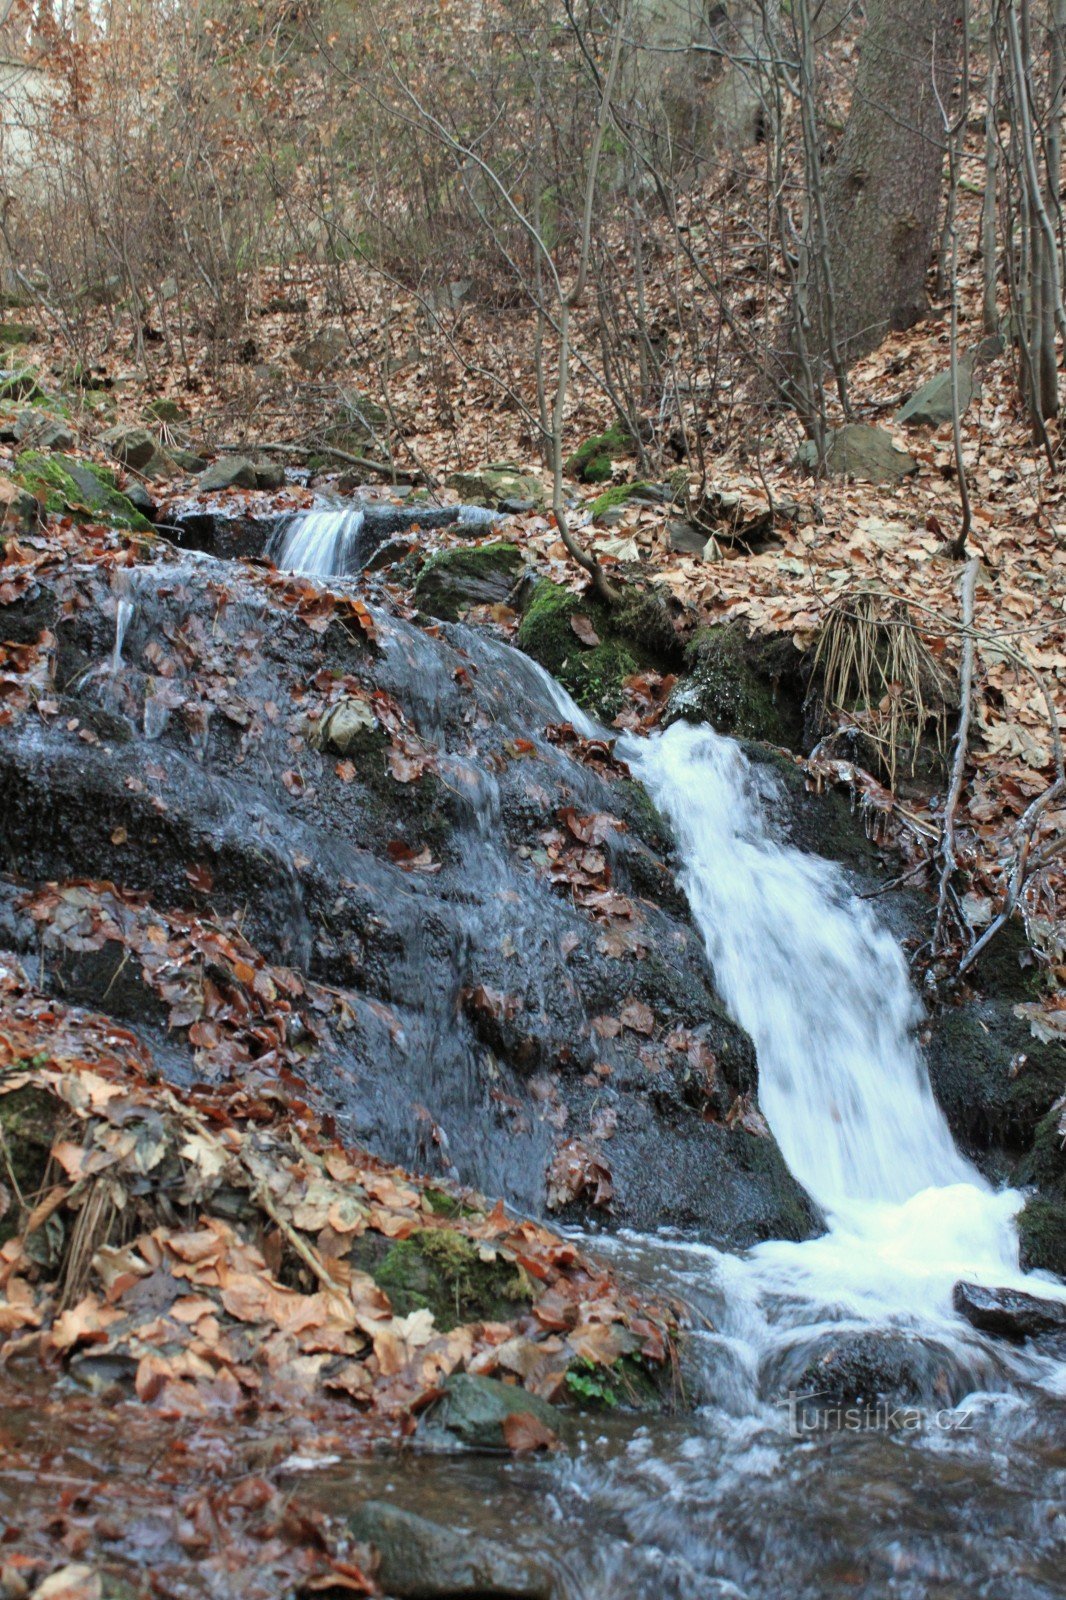 Jedan od manjih slapova u gornjem dijelu doline